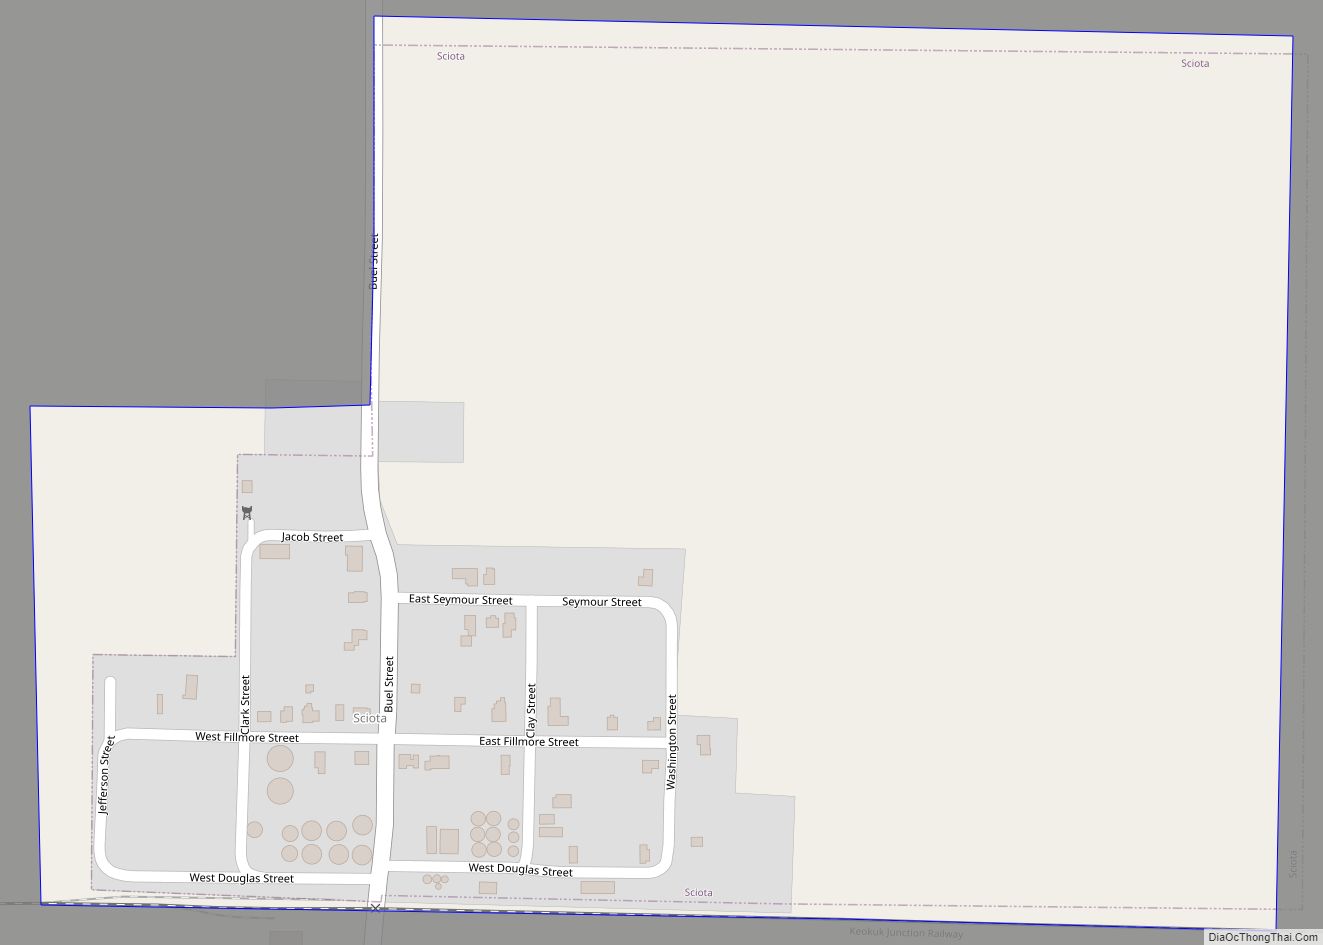 Map of Sciota village